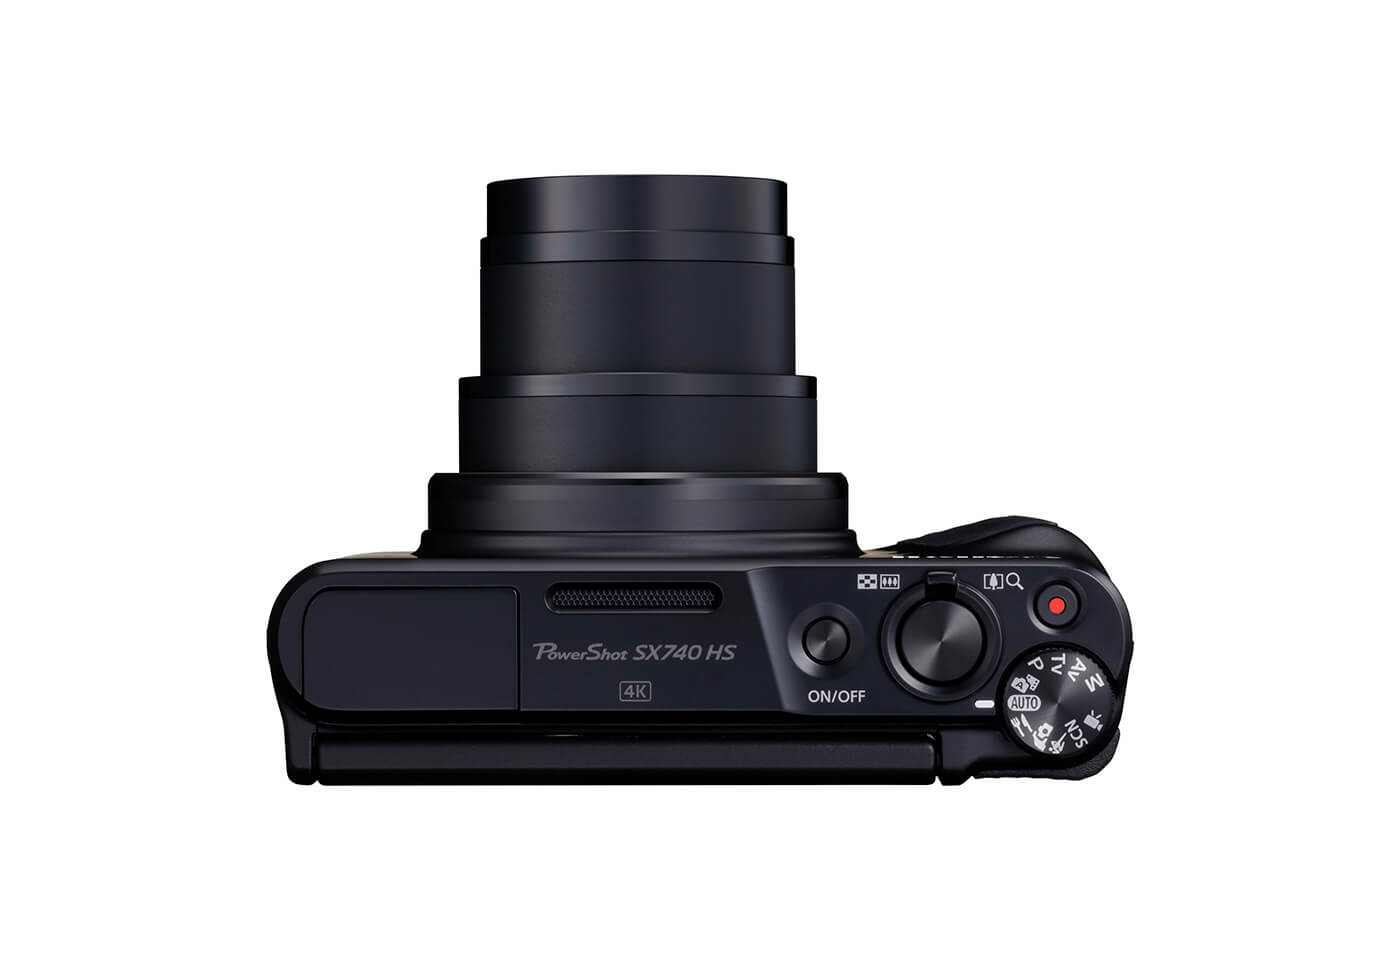 PowerShot SX740 HS Your favourite travel companion Canon Australia